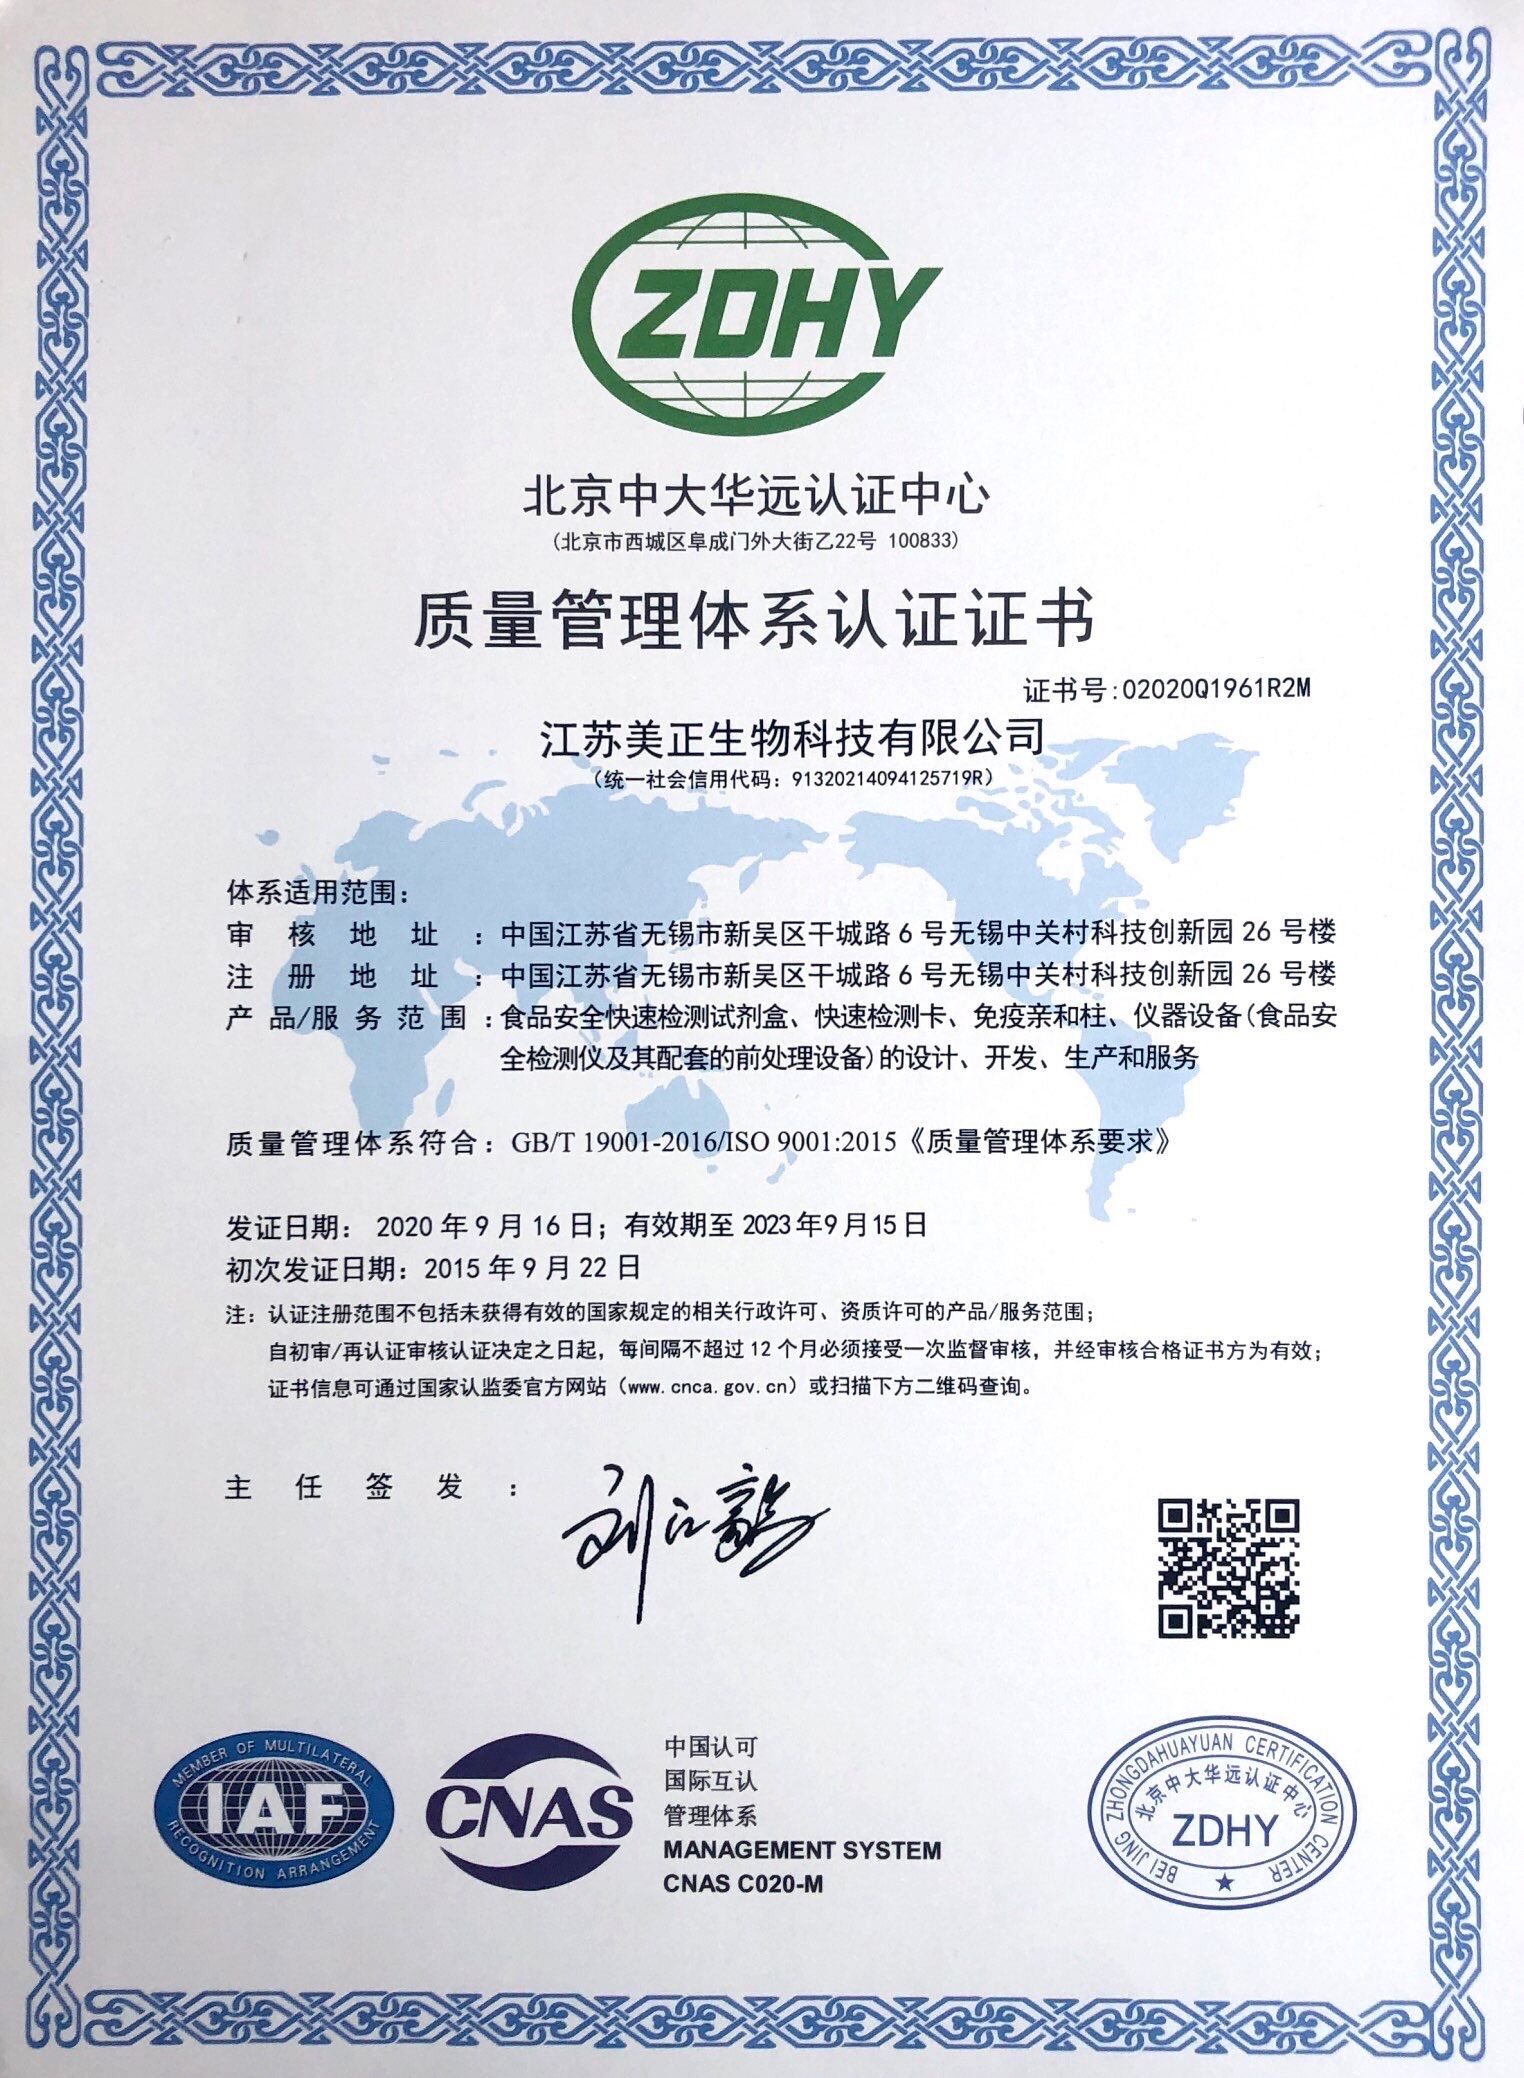 江苏美正-质量管理体系认证证书